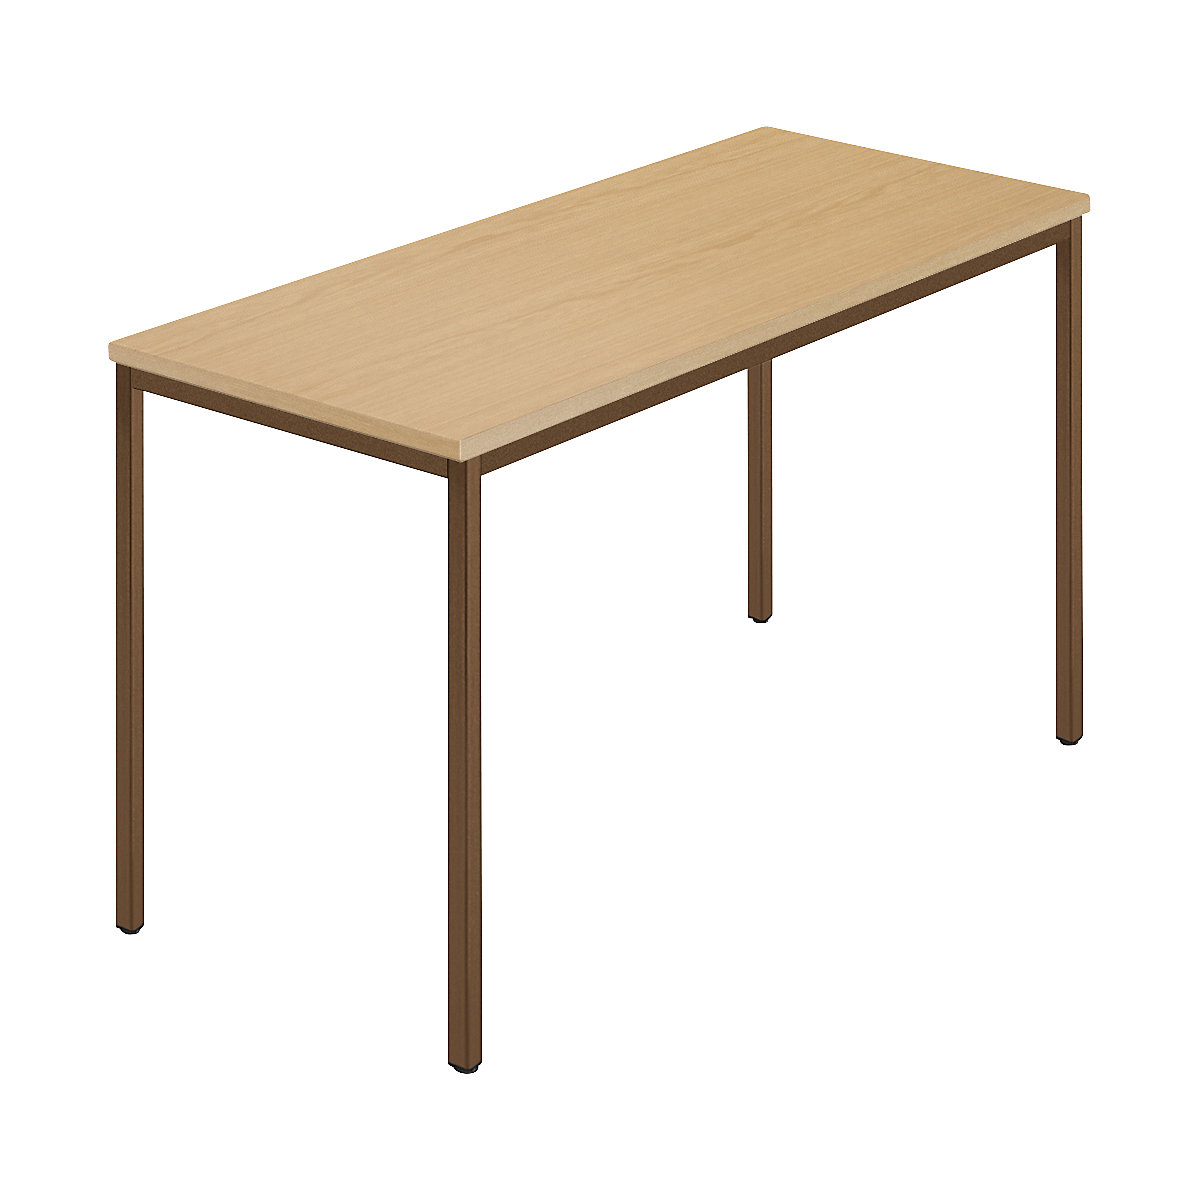 Rectangular table, coated rectangular tubing, WxD 1200 x 600 mm, beech natural / brown-5